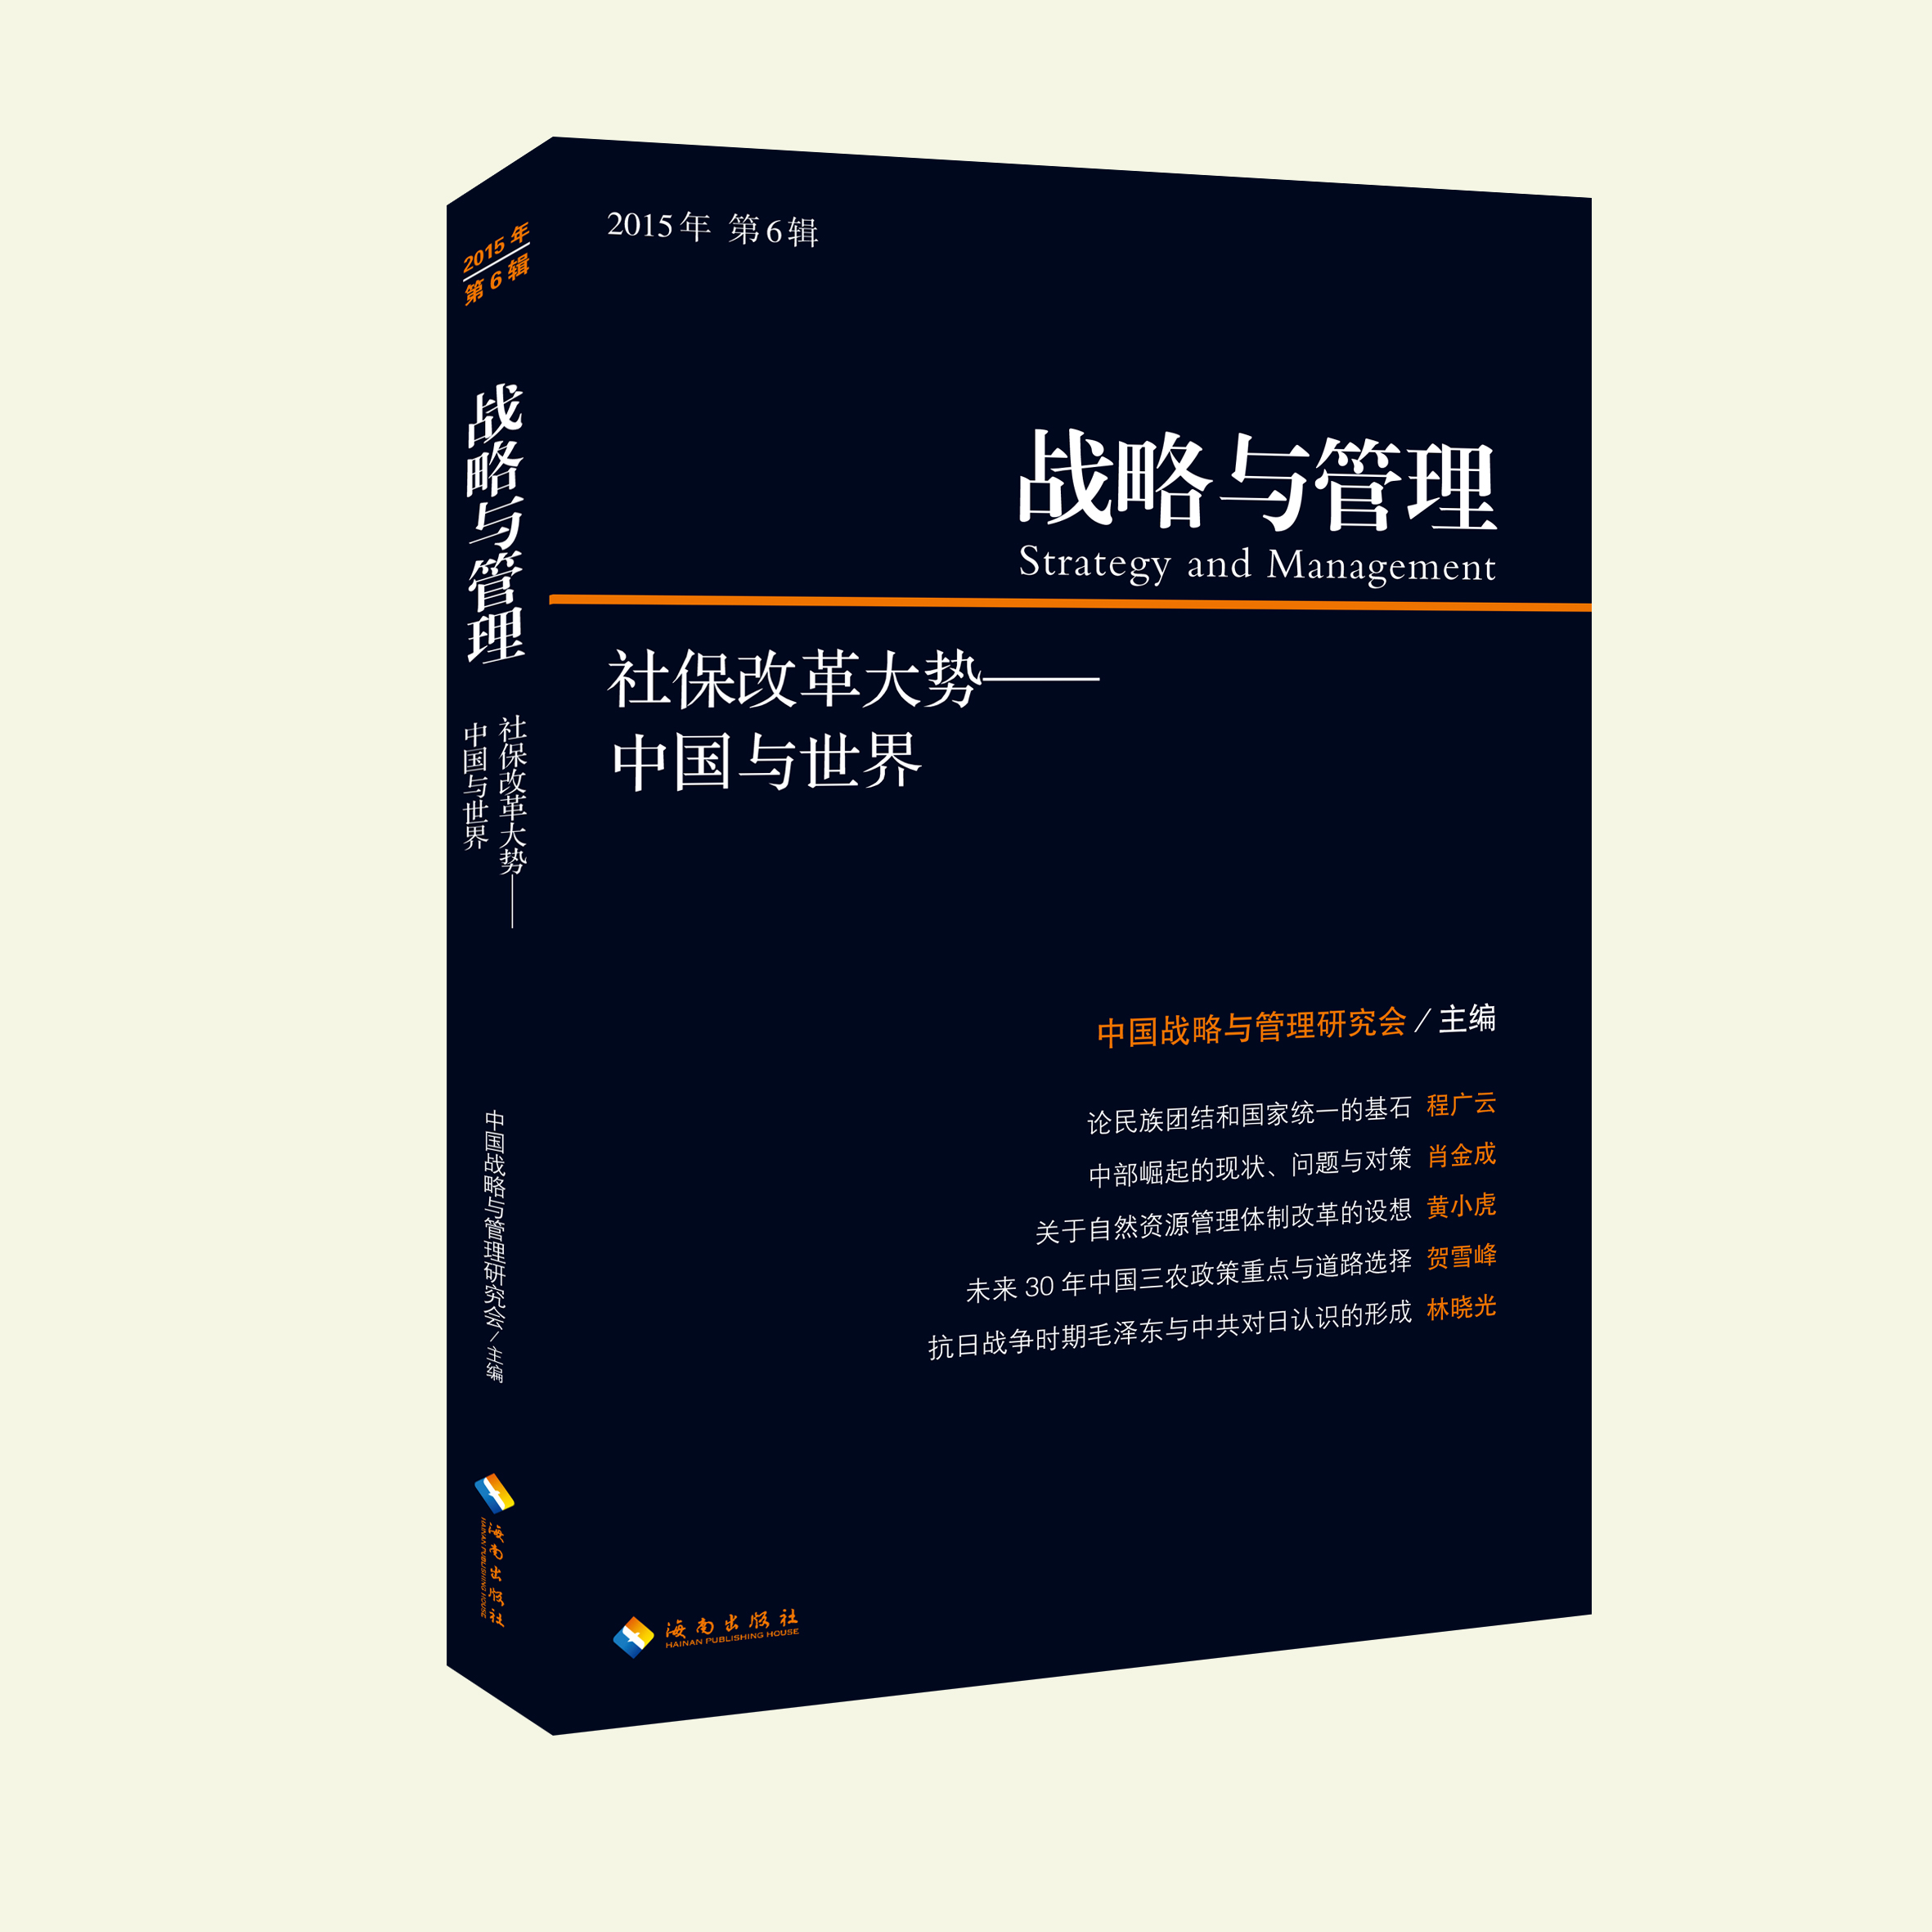 战略与管理 2015年第 6辑 社保改革大势 : 中国与世界